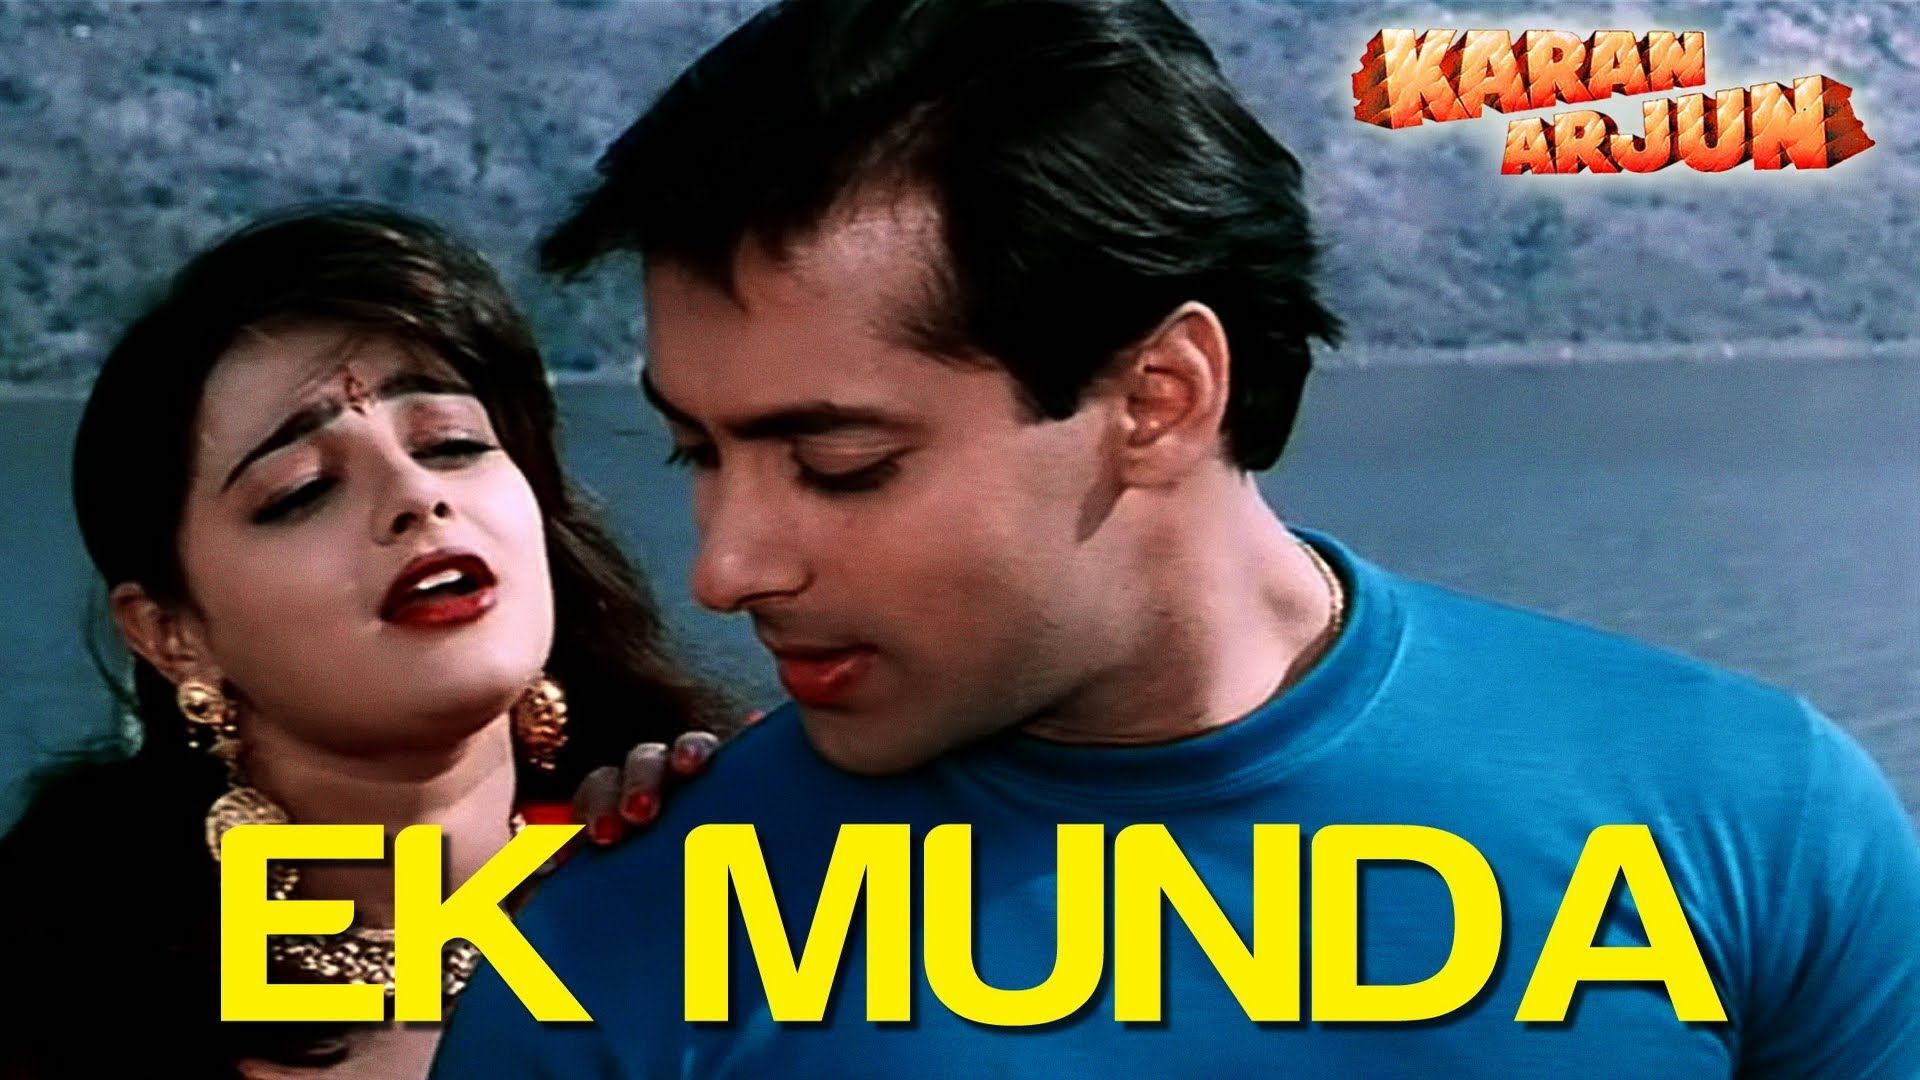 Ek Munda Arjun. Salman Khan & Mamta Kulkarni. Lata